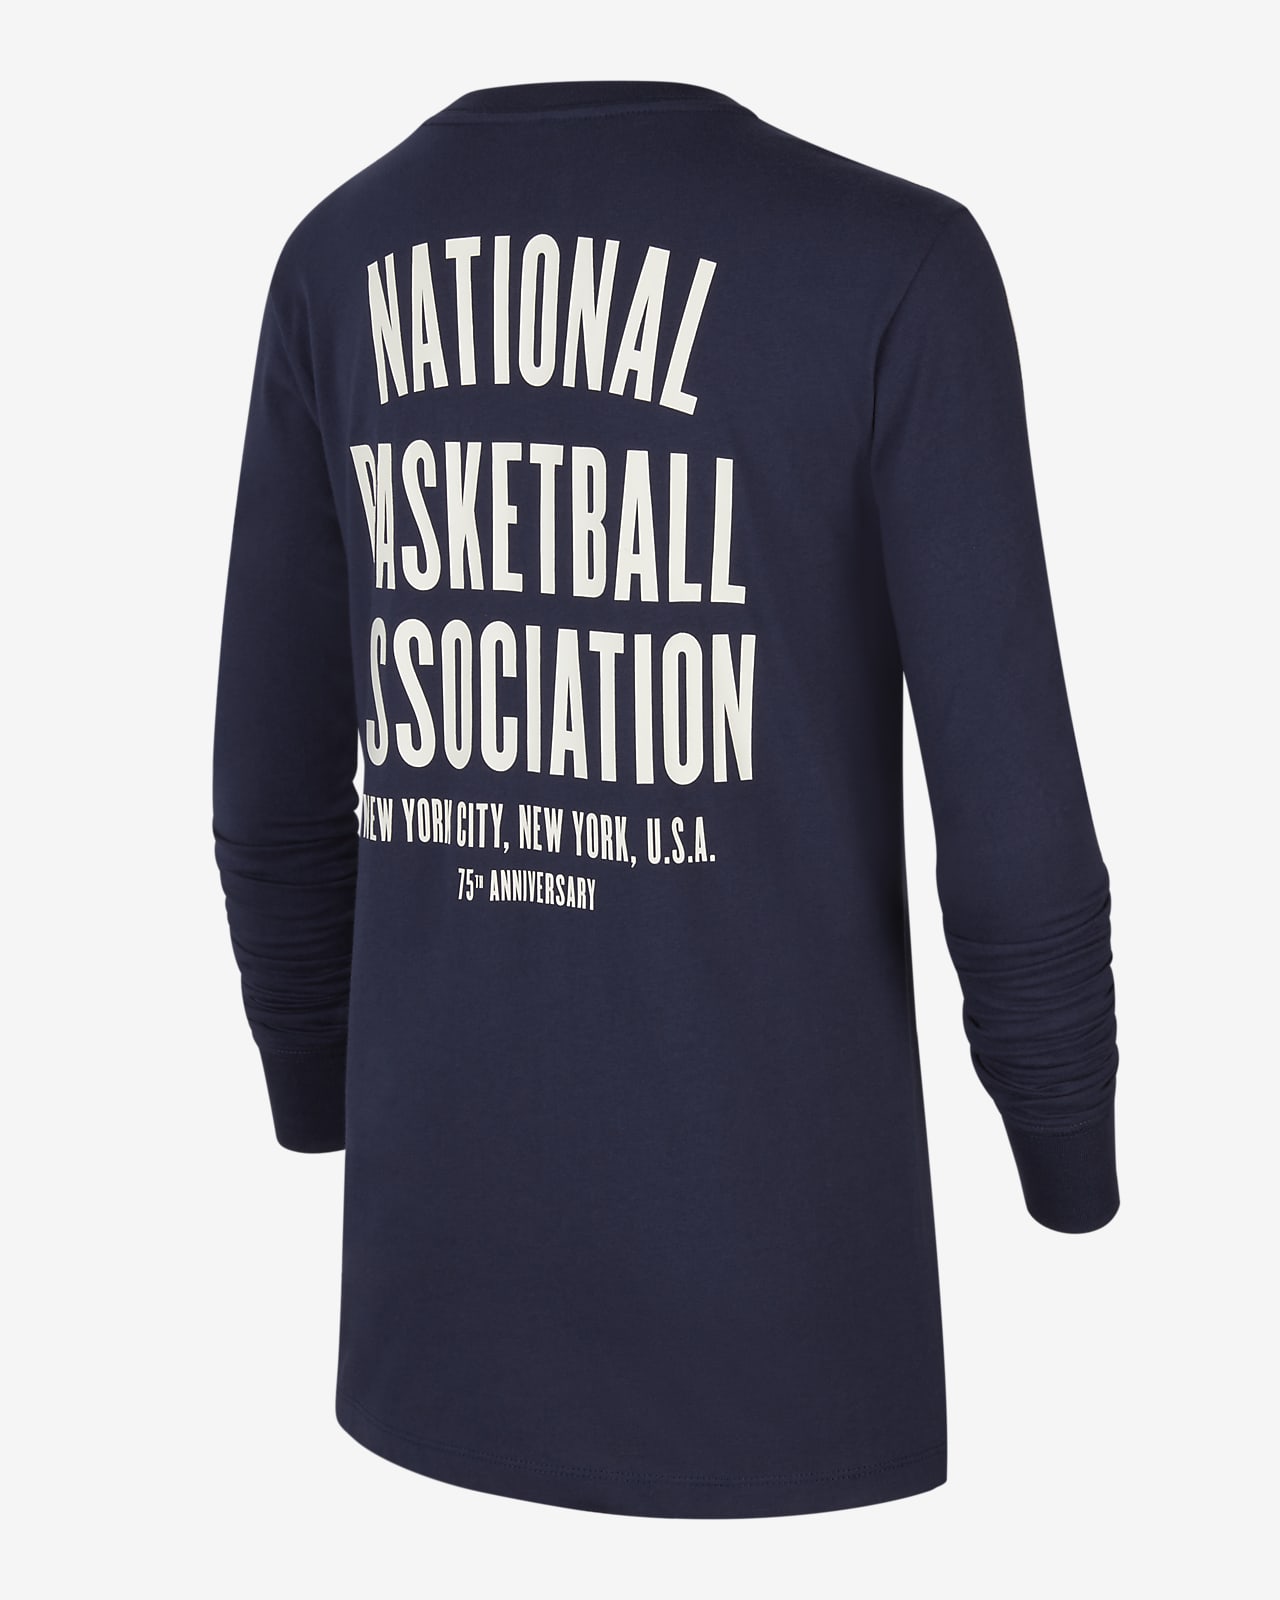 Nike NBA Team 31 NBA T-shirt